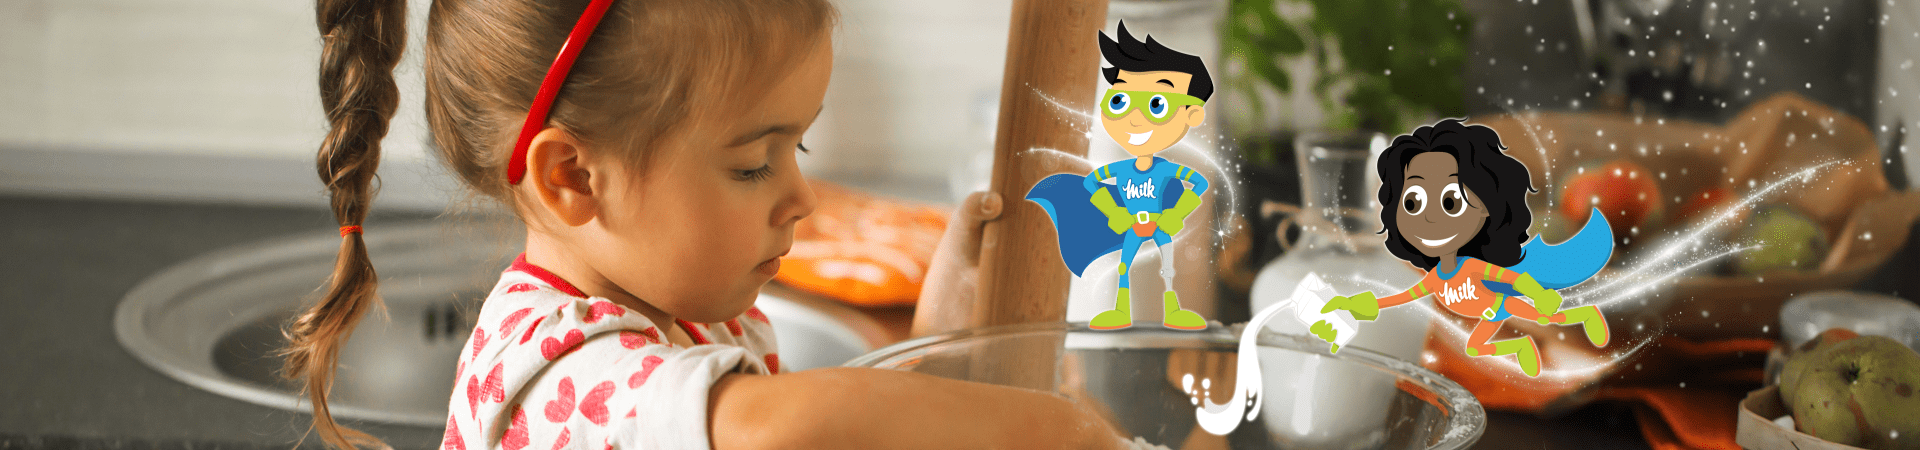 Child baking and Milk Supergirl putting Milk in Mixture